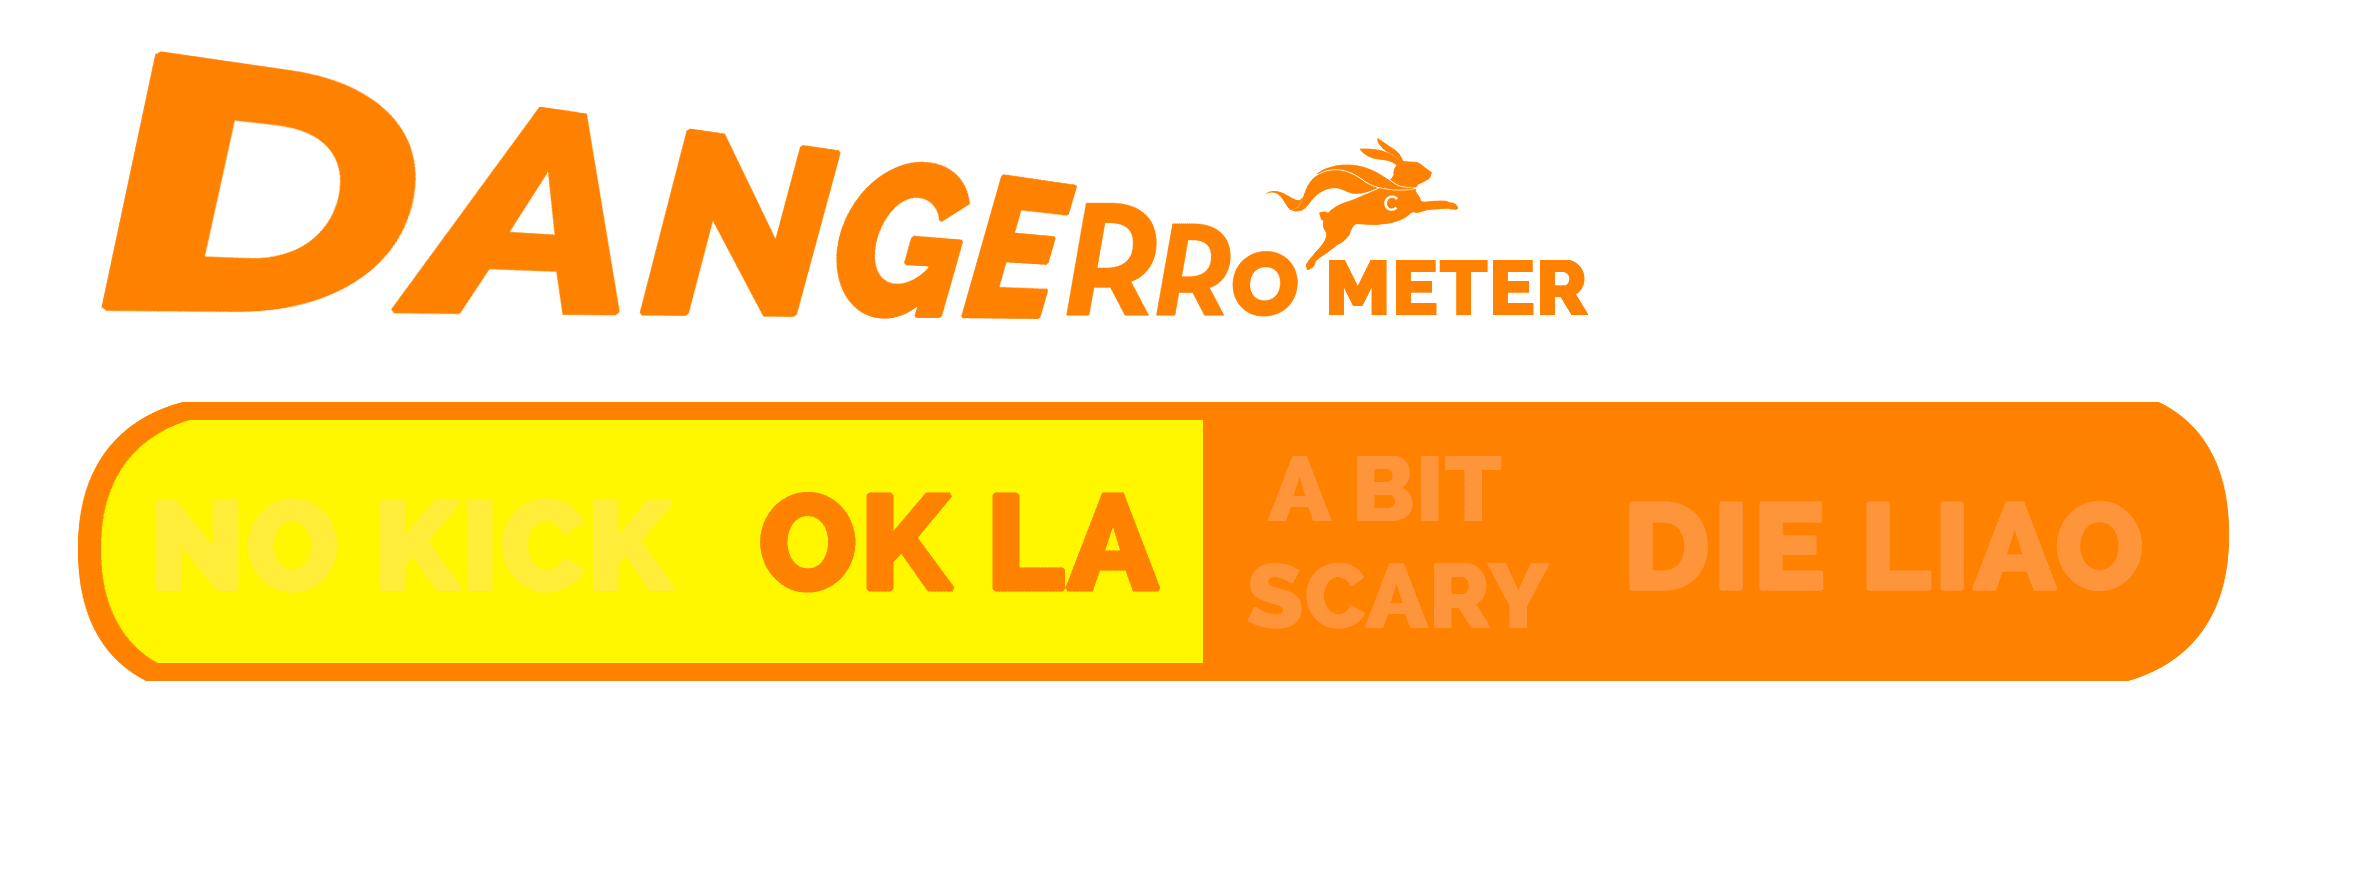 Dangerrometer dangerous car mistakes